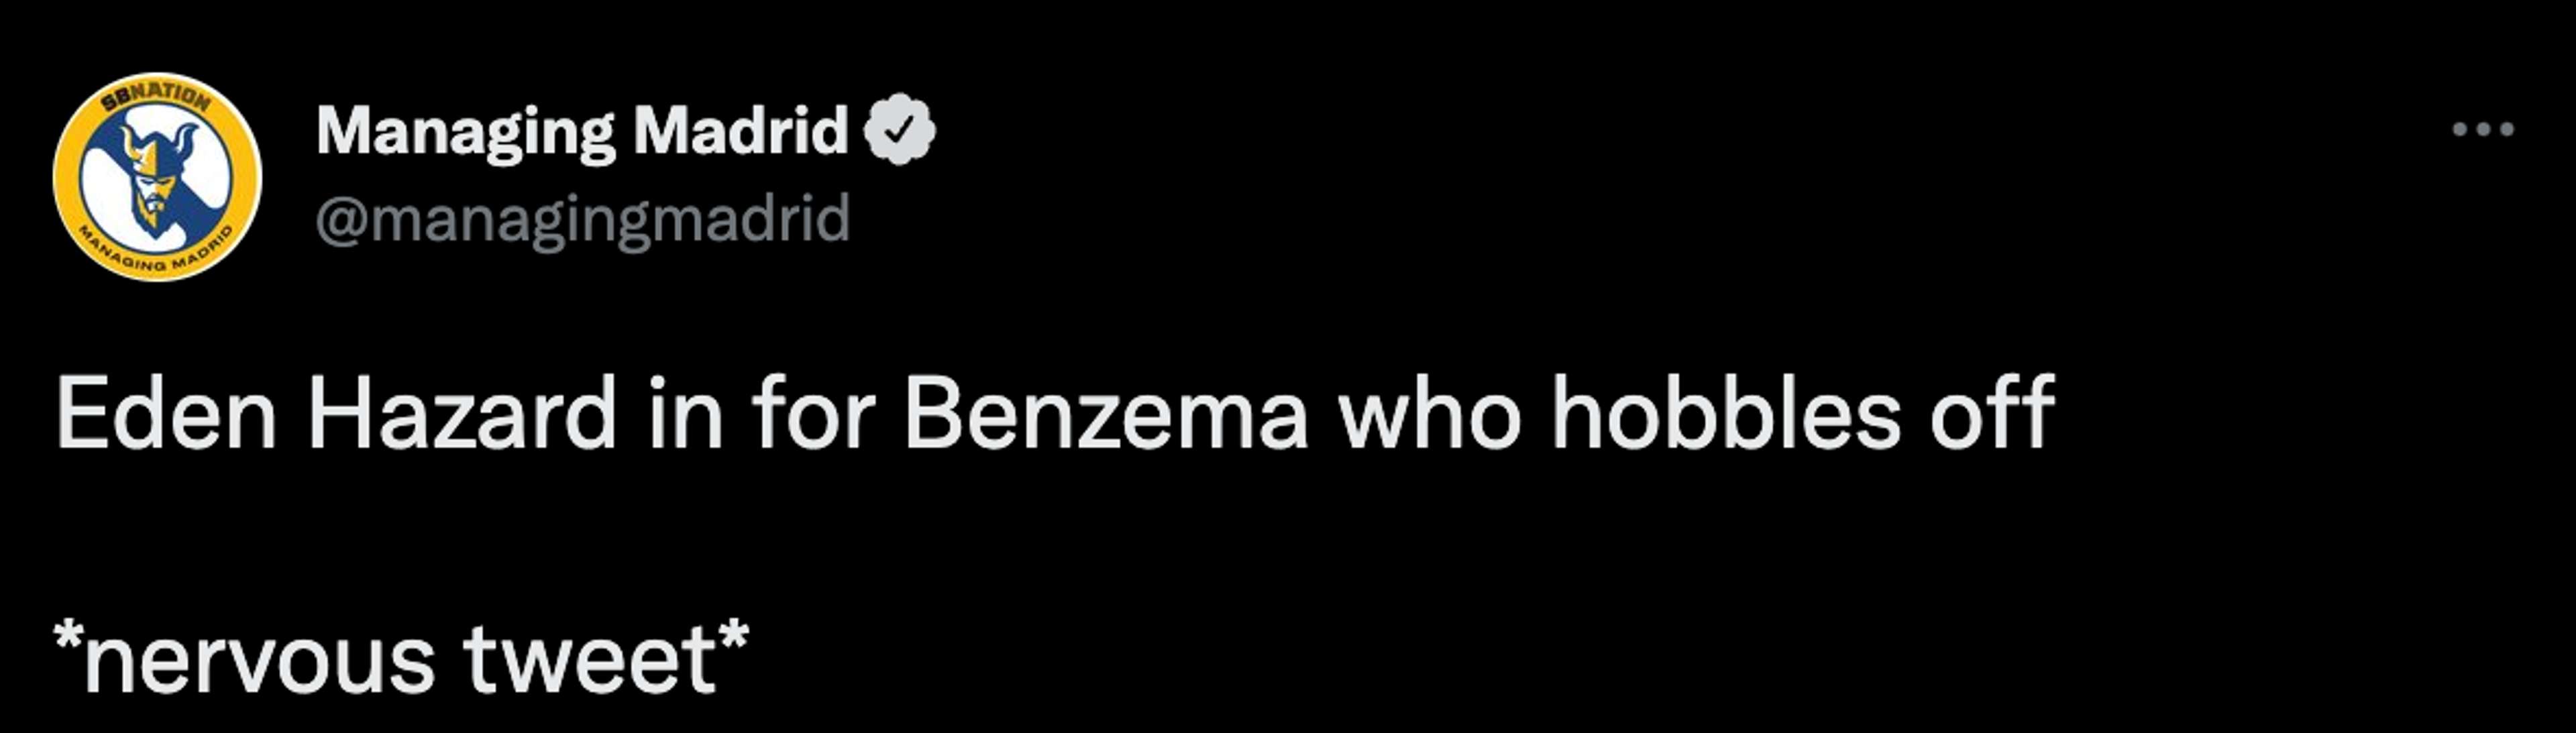 Benzema injury tweet 3